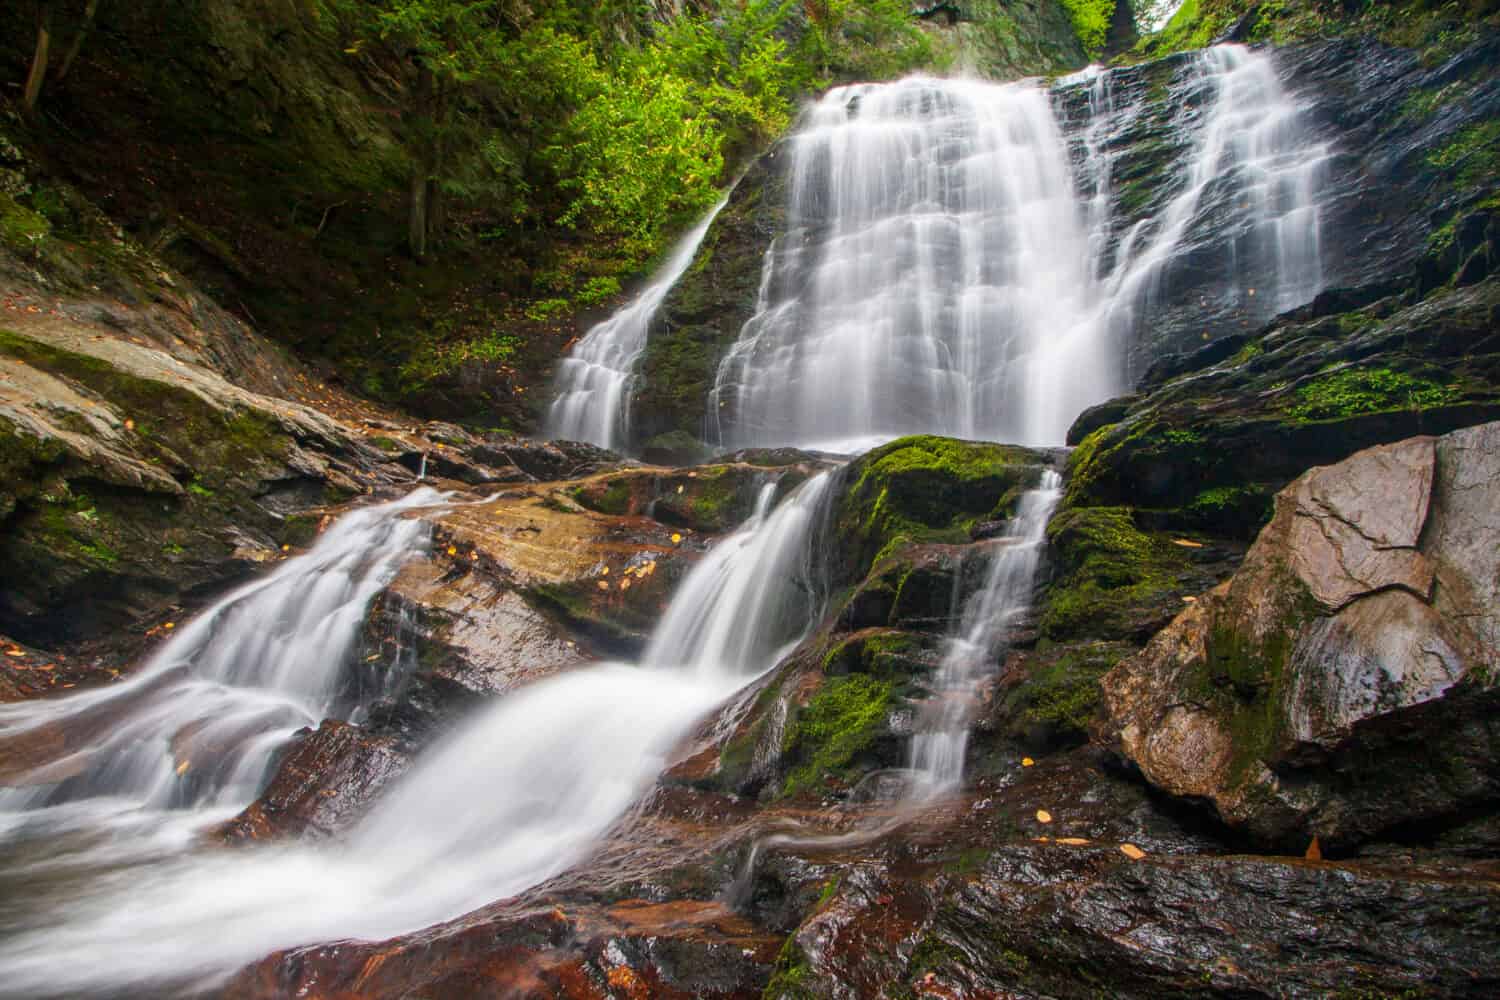 Majestic Moss Glen Falls near Stowe, Vermont USA